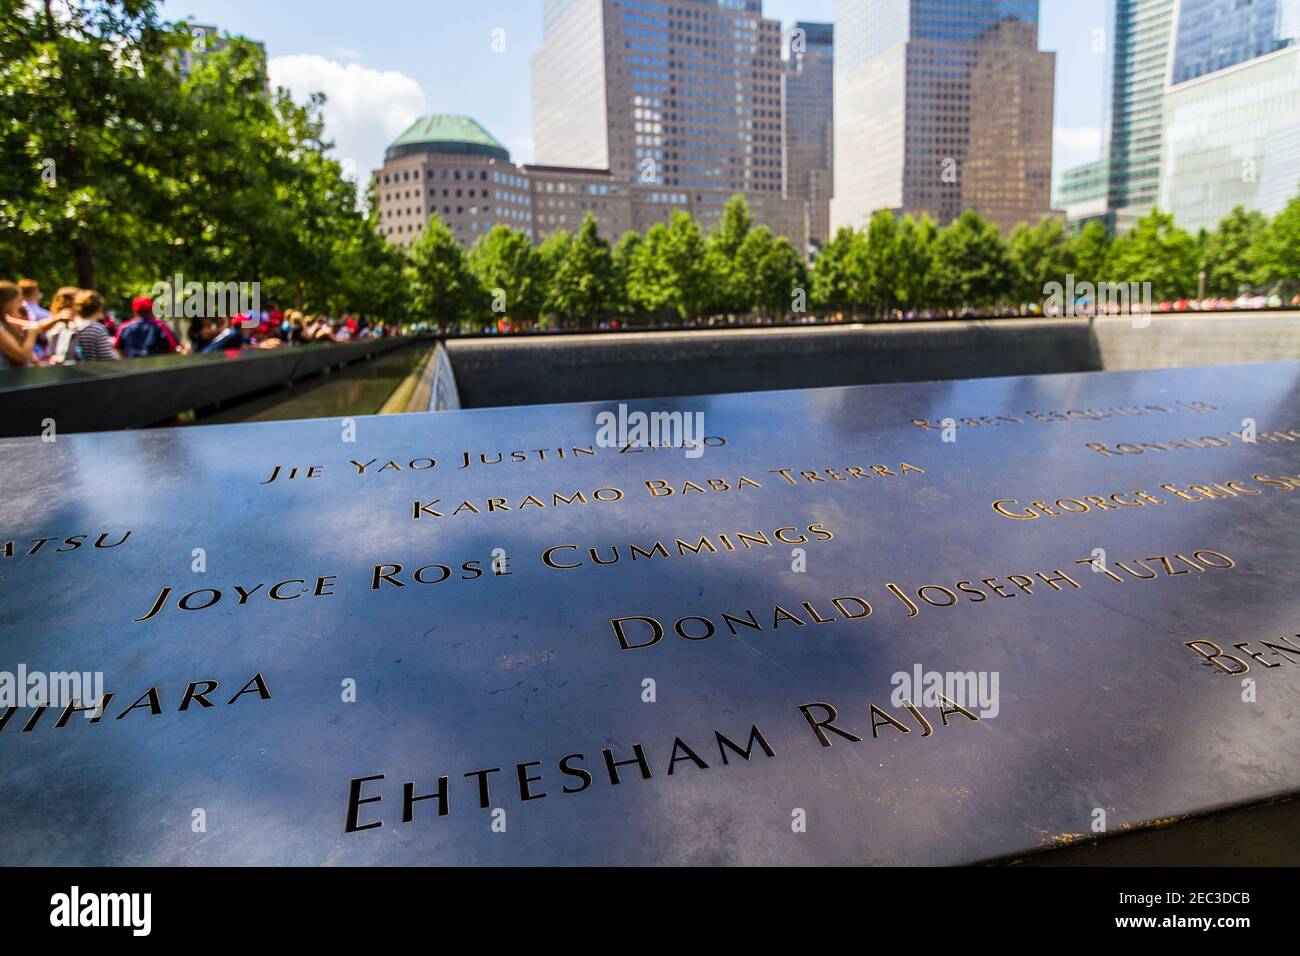 Noms des victimes de l'attaque terroriste au Centre du commerce mondial, en septembre 11, 2001, inscrits sur les parapets de la piscine du mémorial Banque D'Images